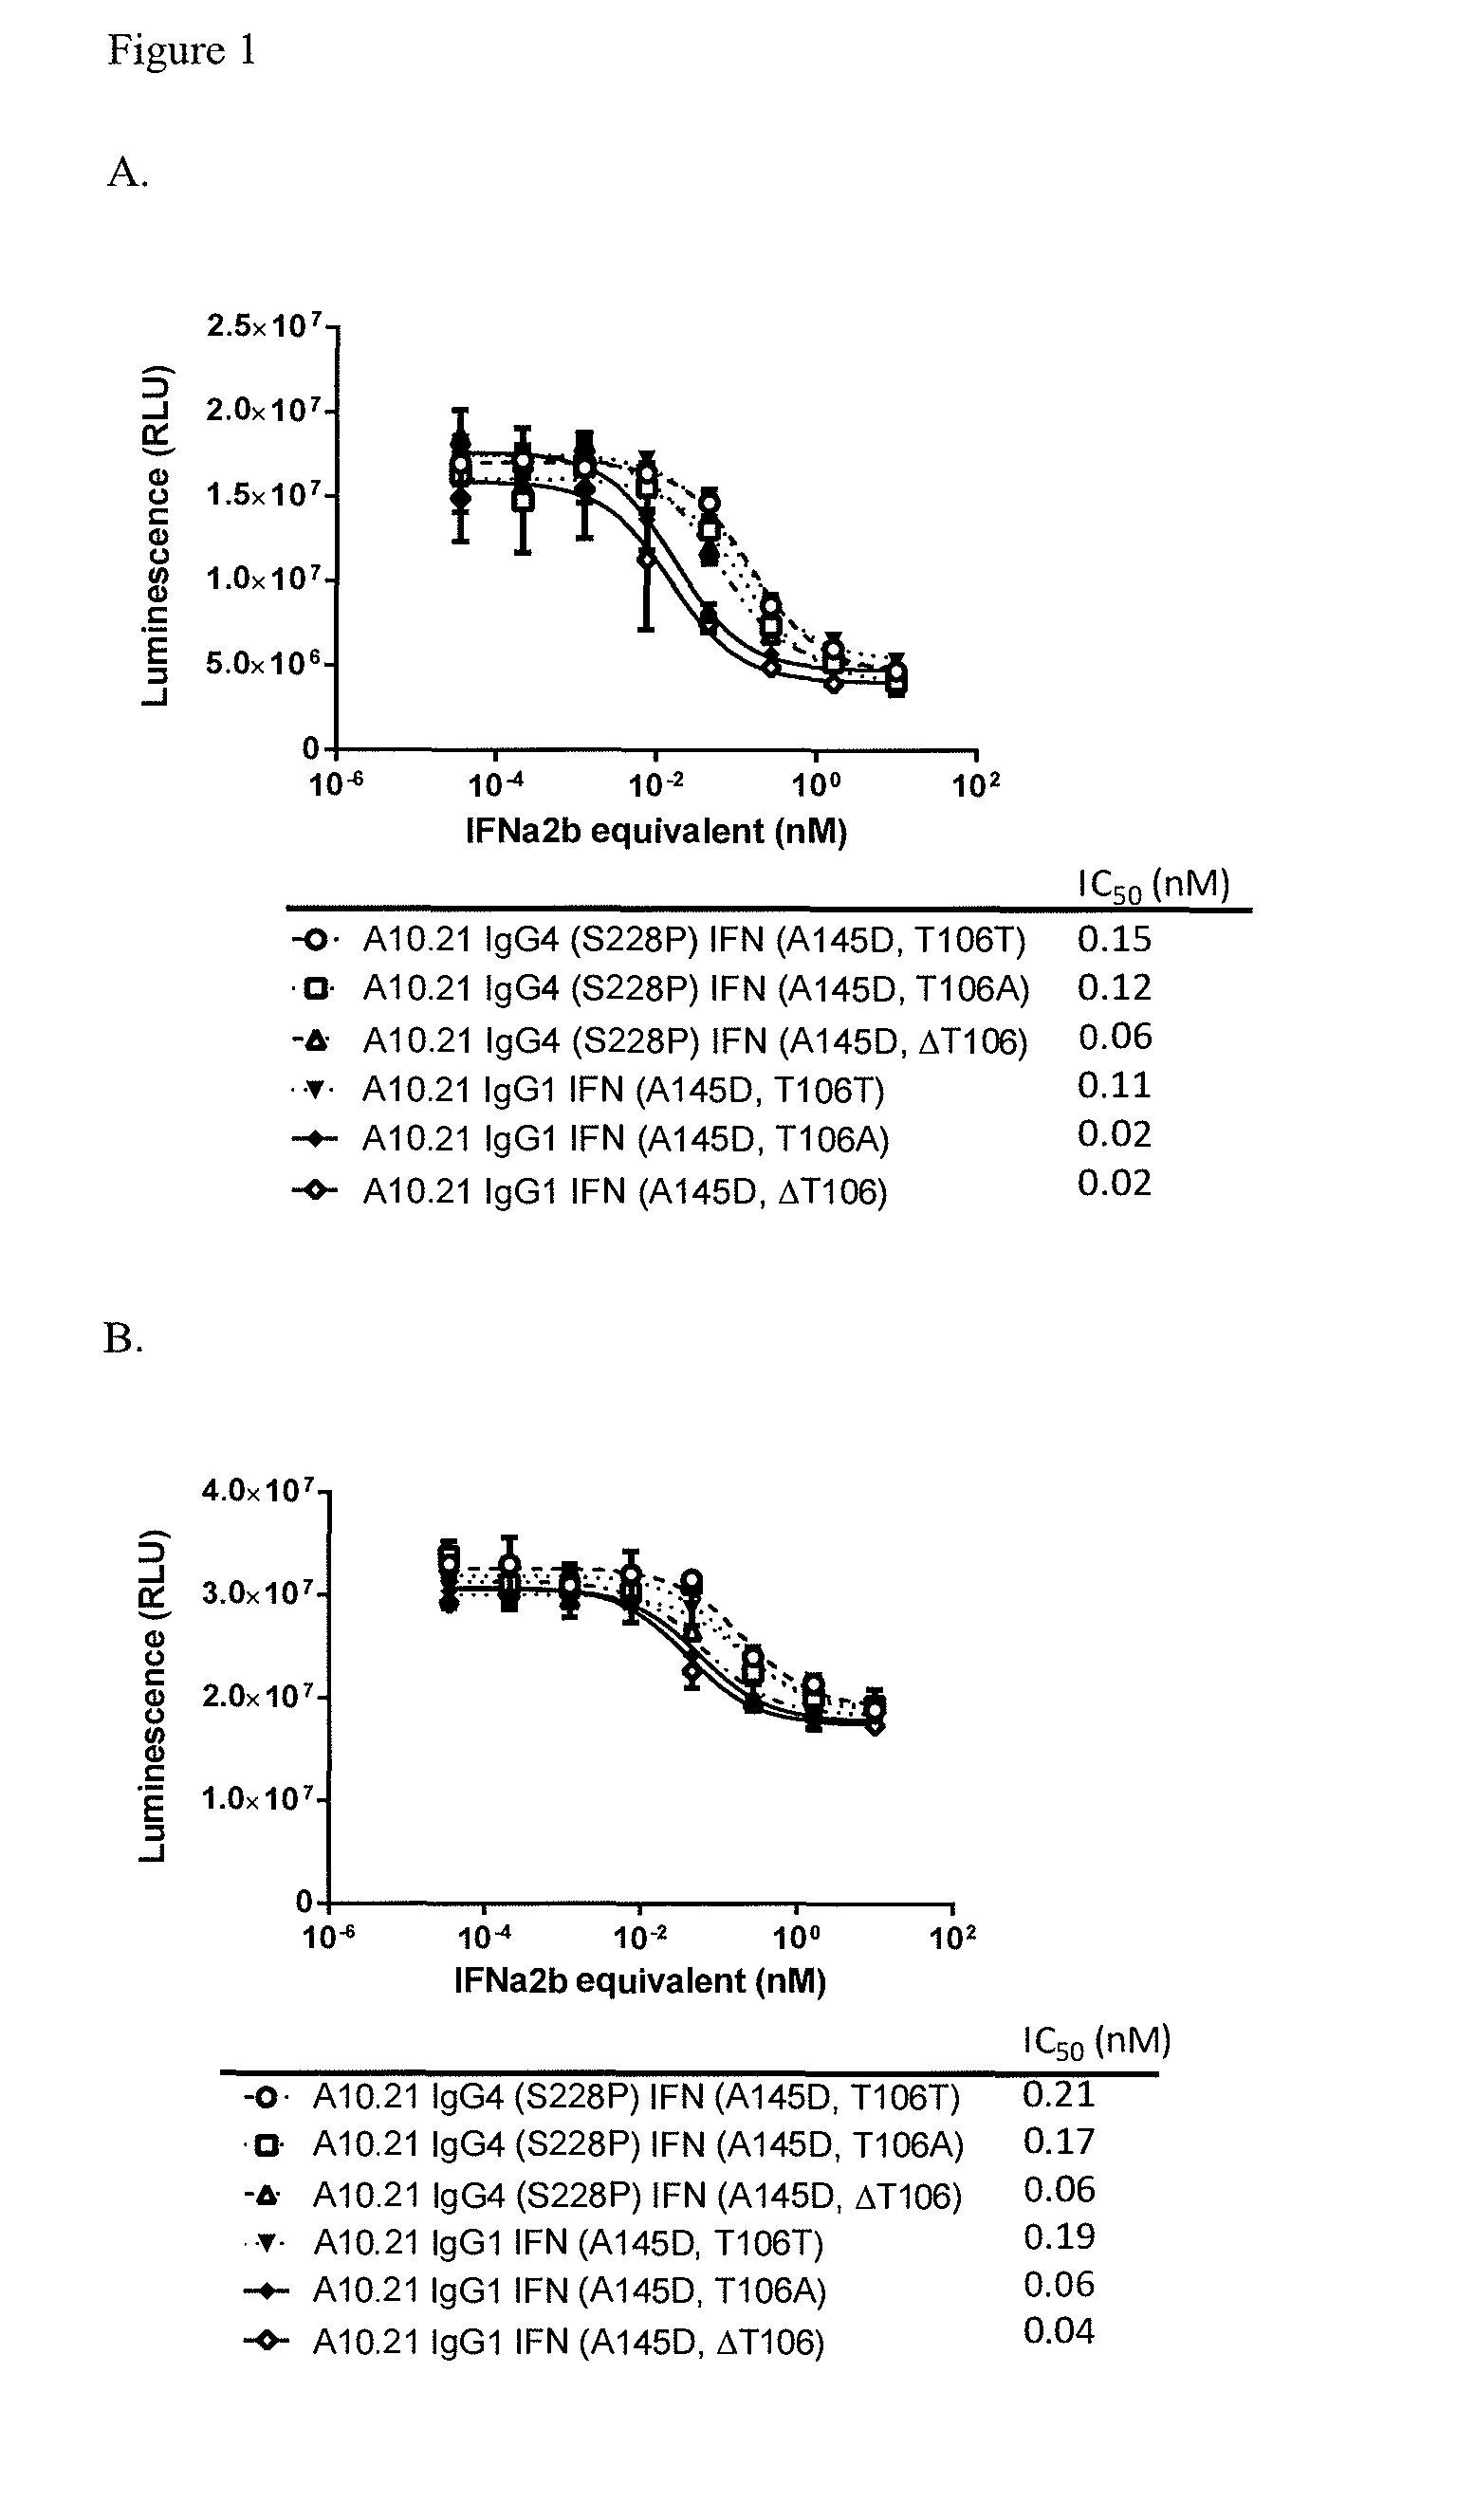 Interferon alpha 2b variants